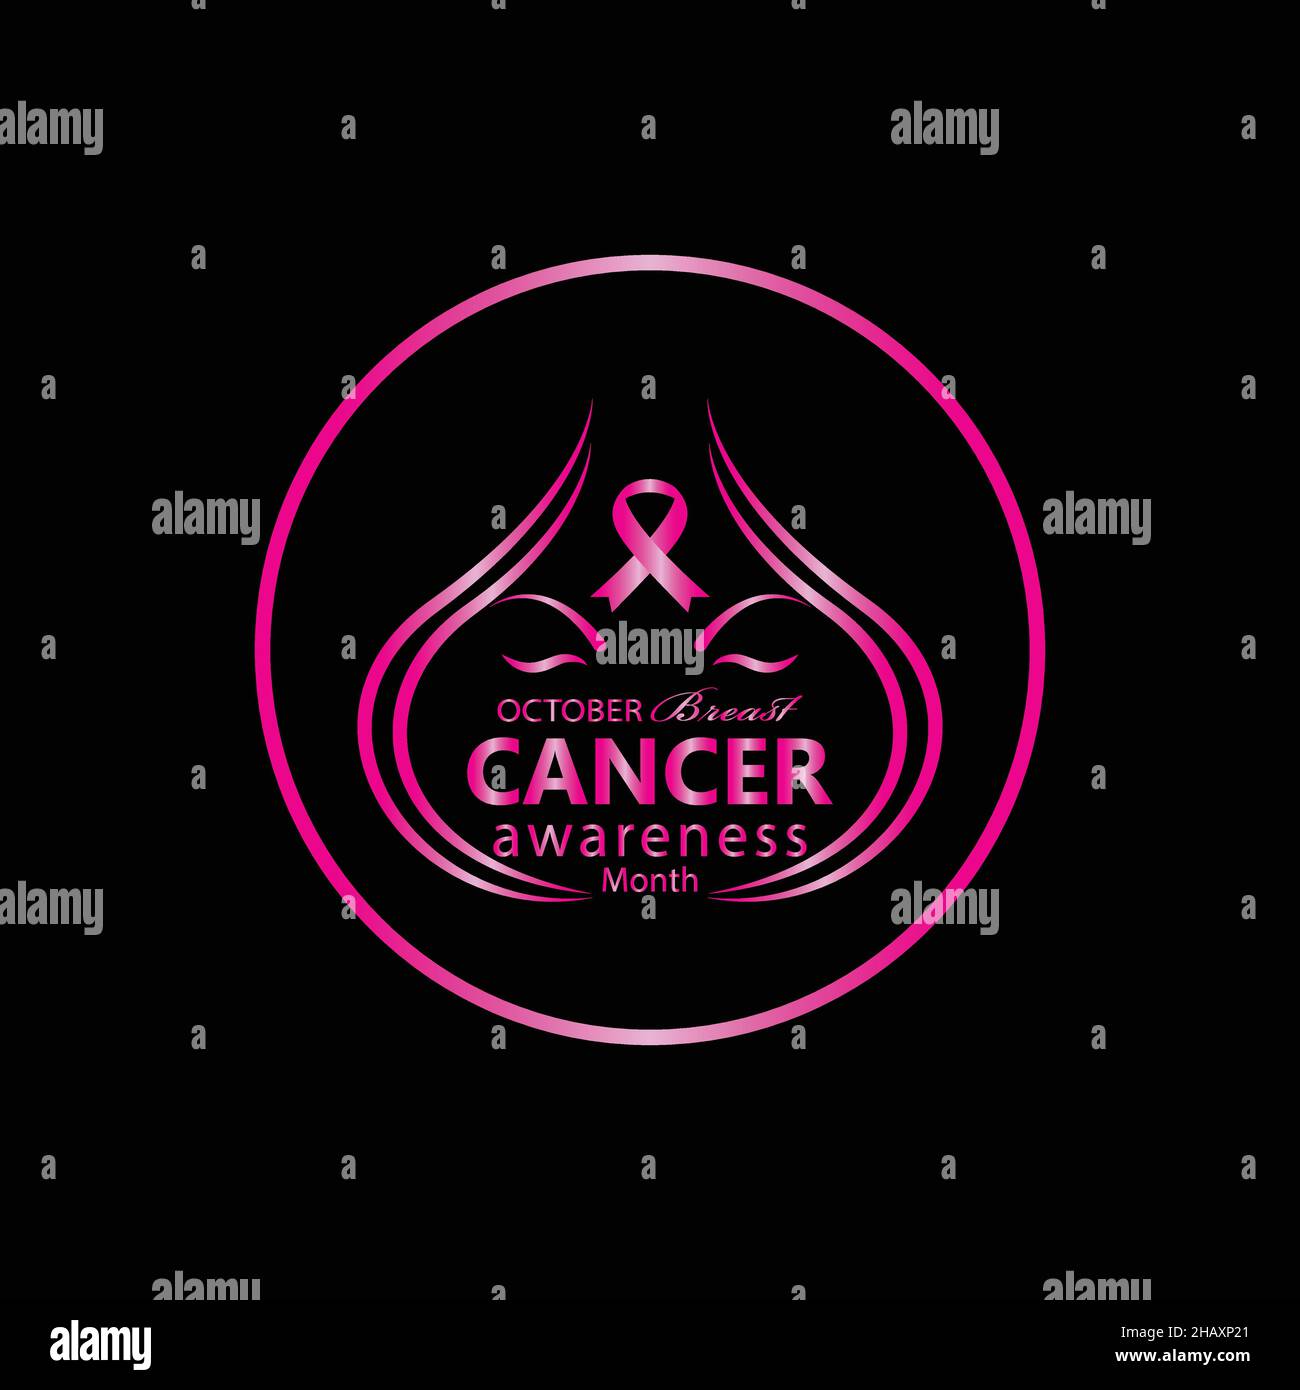 Ottobre è mese di consapevolezza di cancro di seno, sensi mostrare il vostro supporto durante mese di consapevolezza di cancro di seno, immagine vettoriale di mese di consapevolezza di cancro di seno. Illustrazione Vettoriale